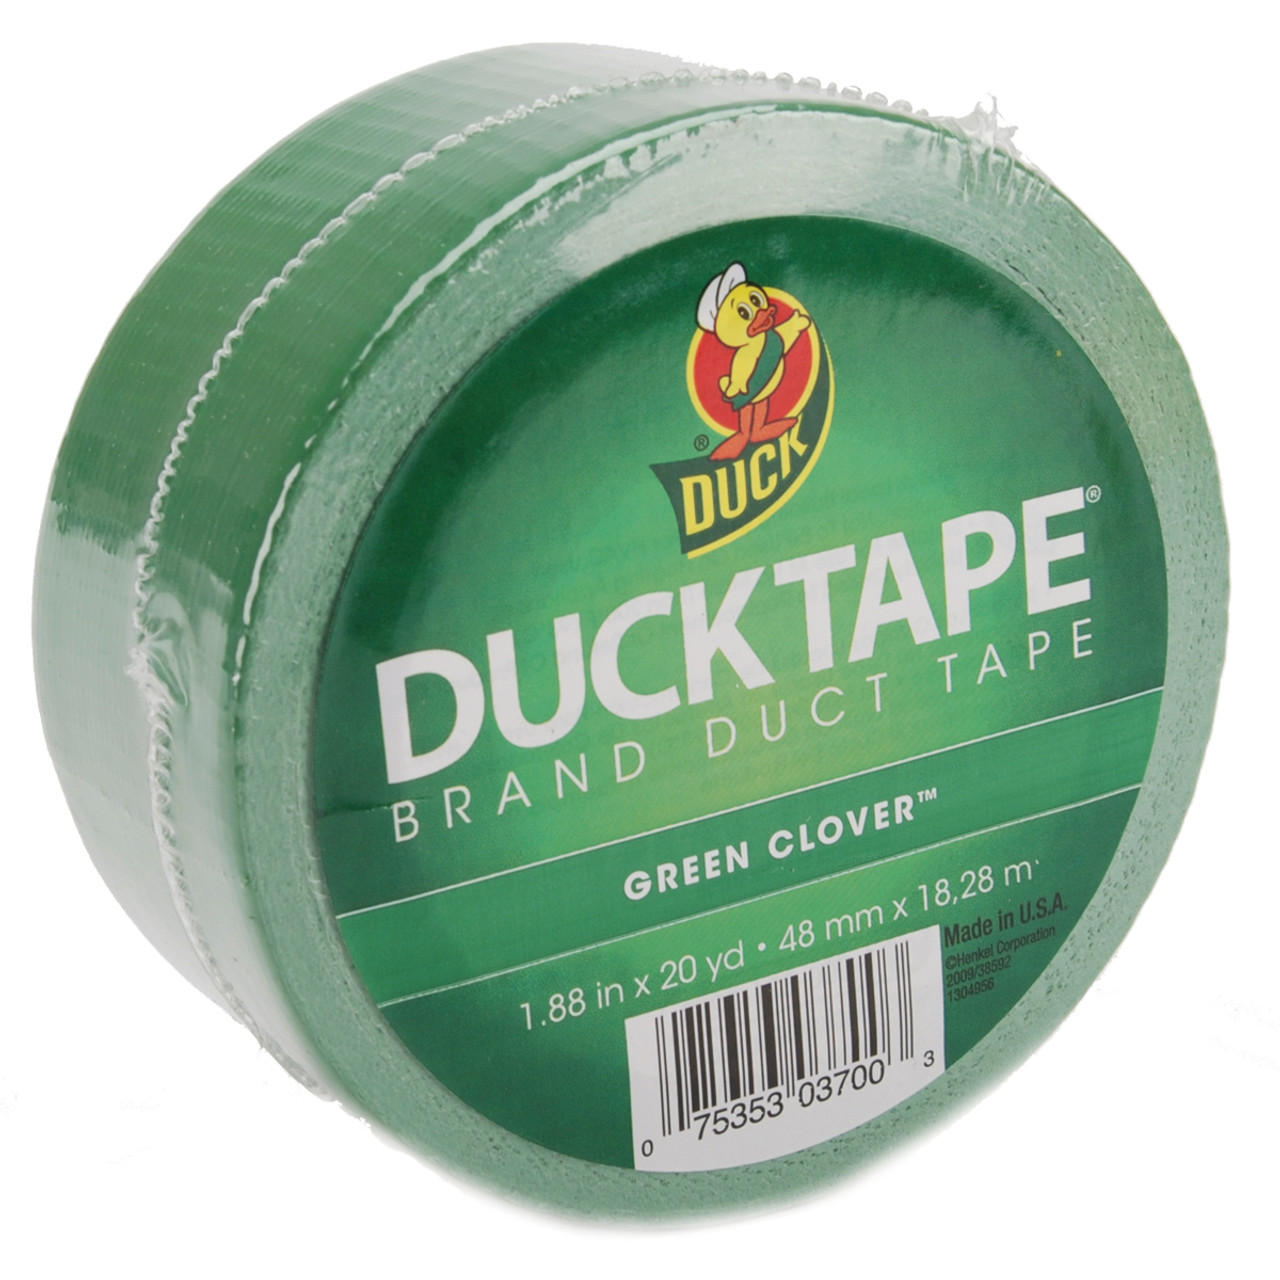 ShurTech Color Duck Tape - 1.88 x 20 yds, Aqua